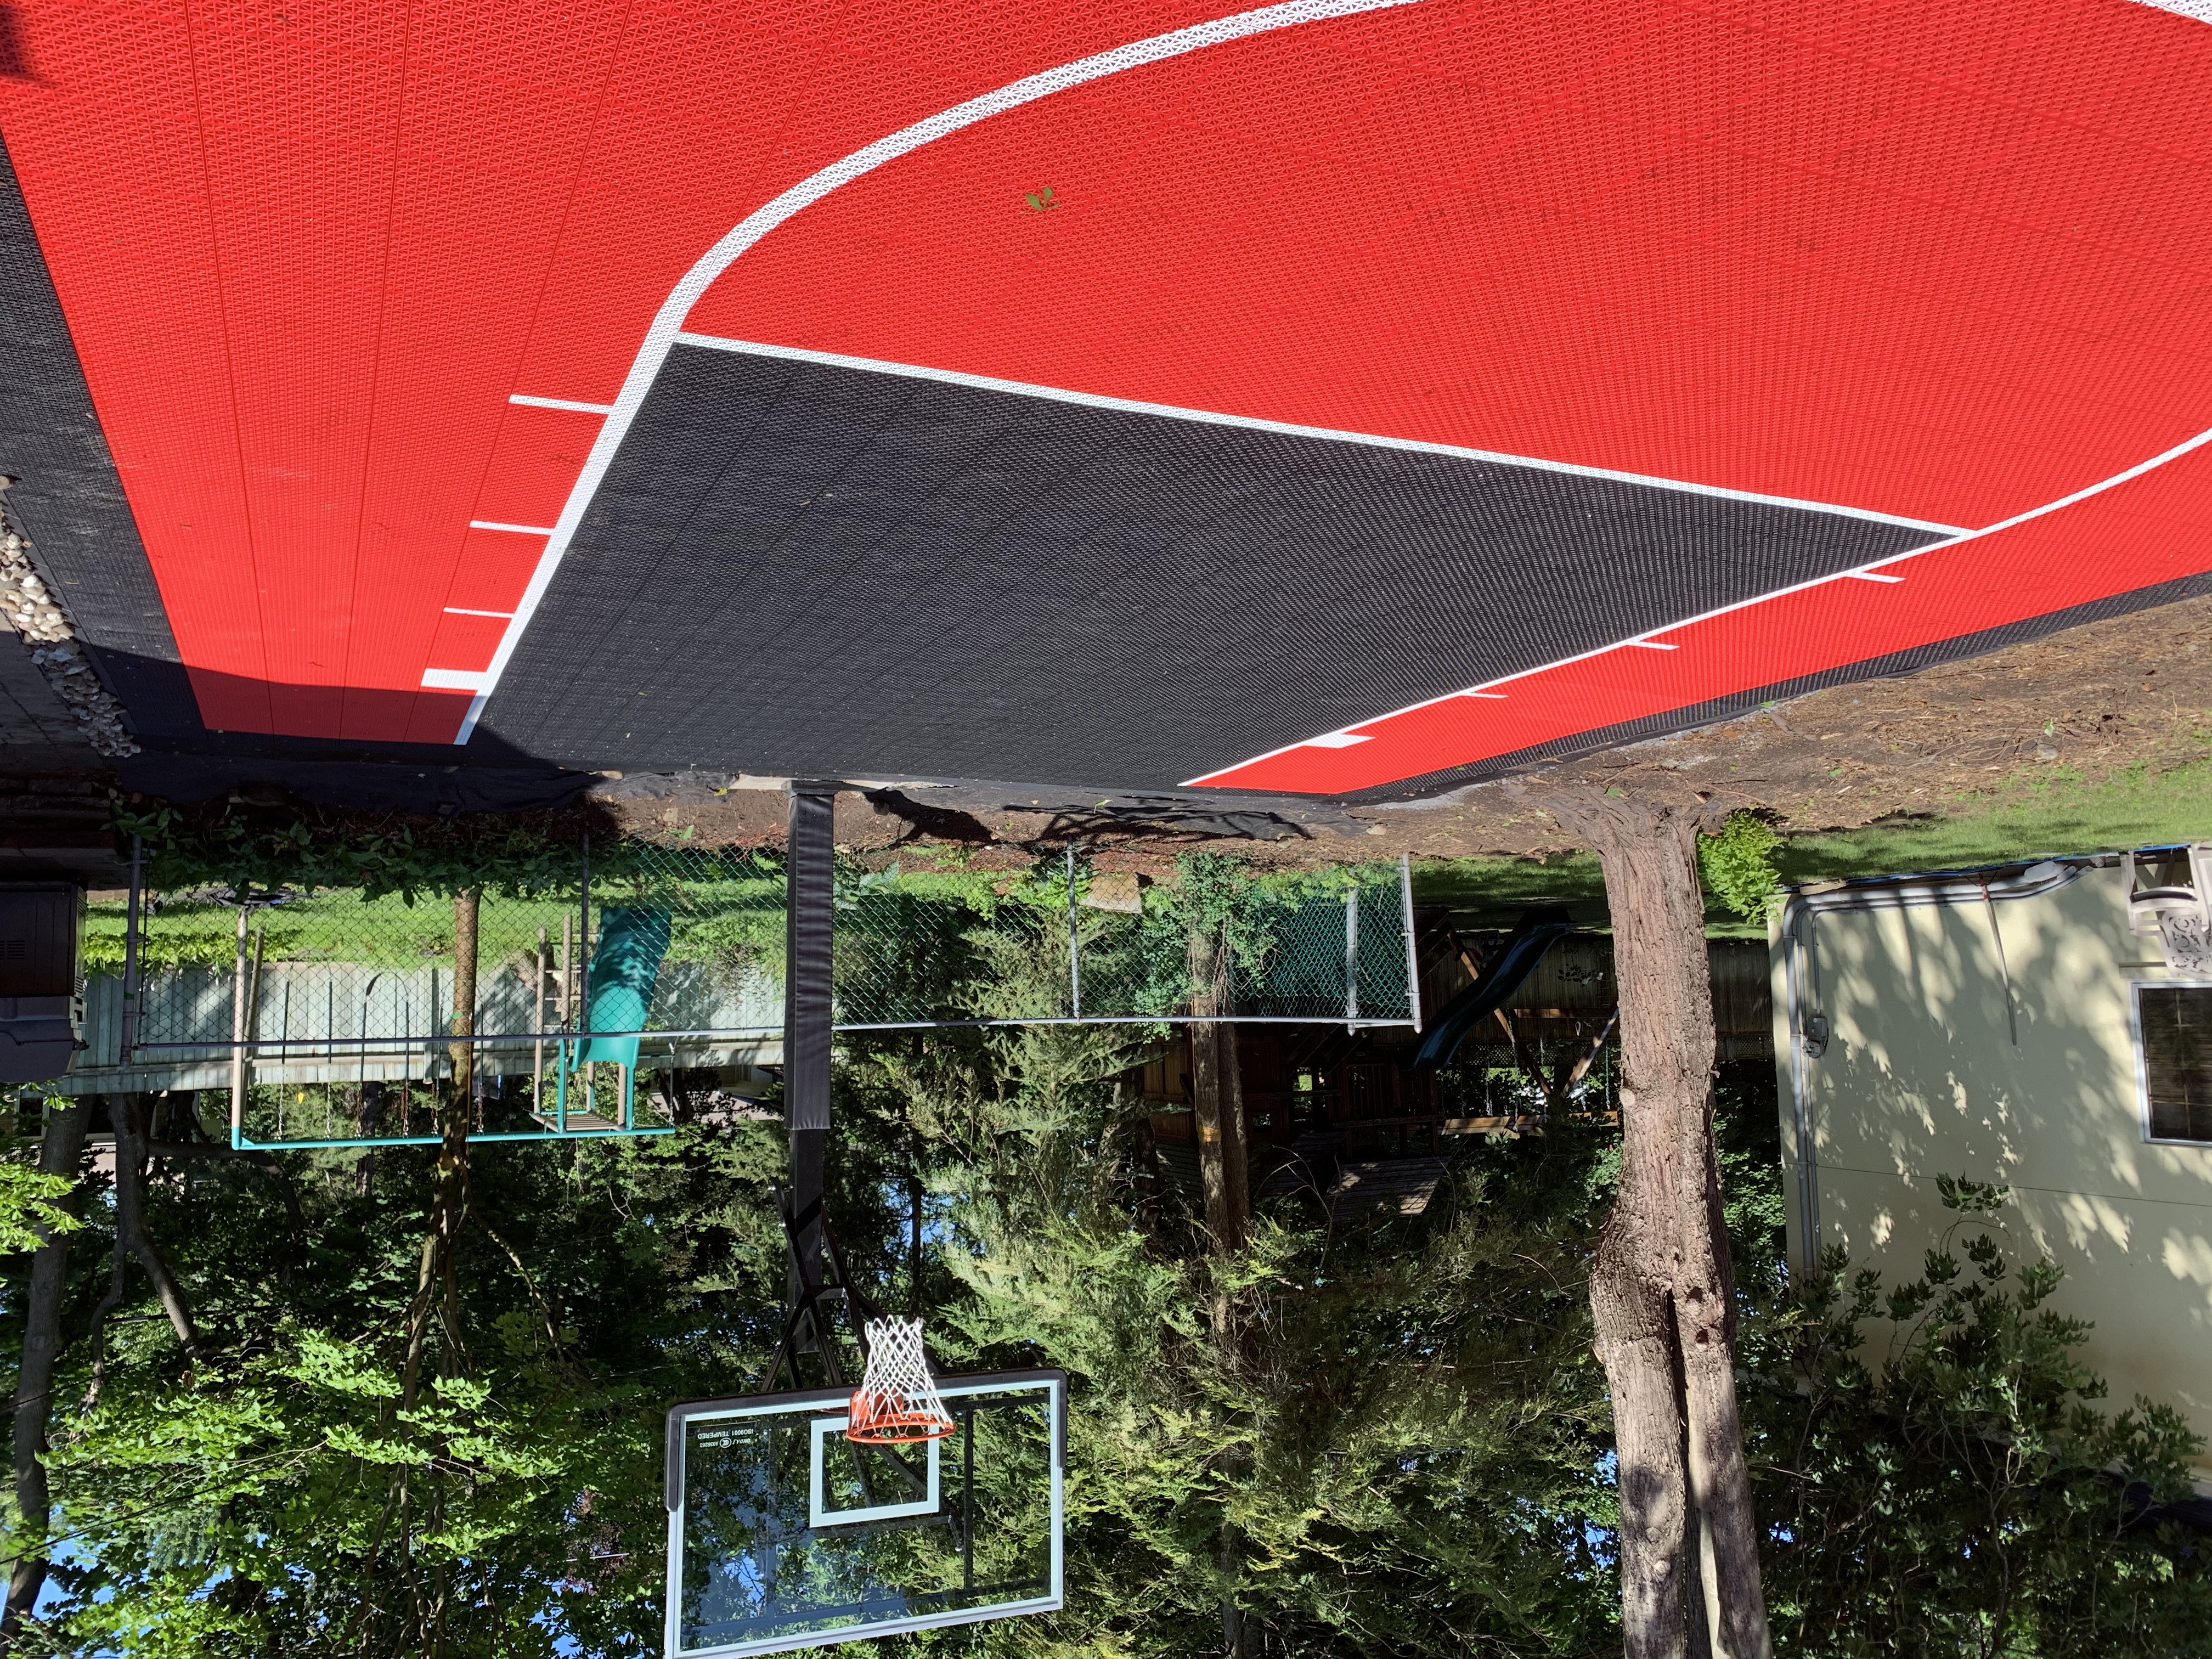 Game kit H1 petit terrain de basketball | Syn-X les experts en surfaces